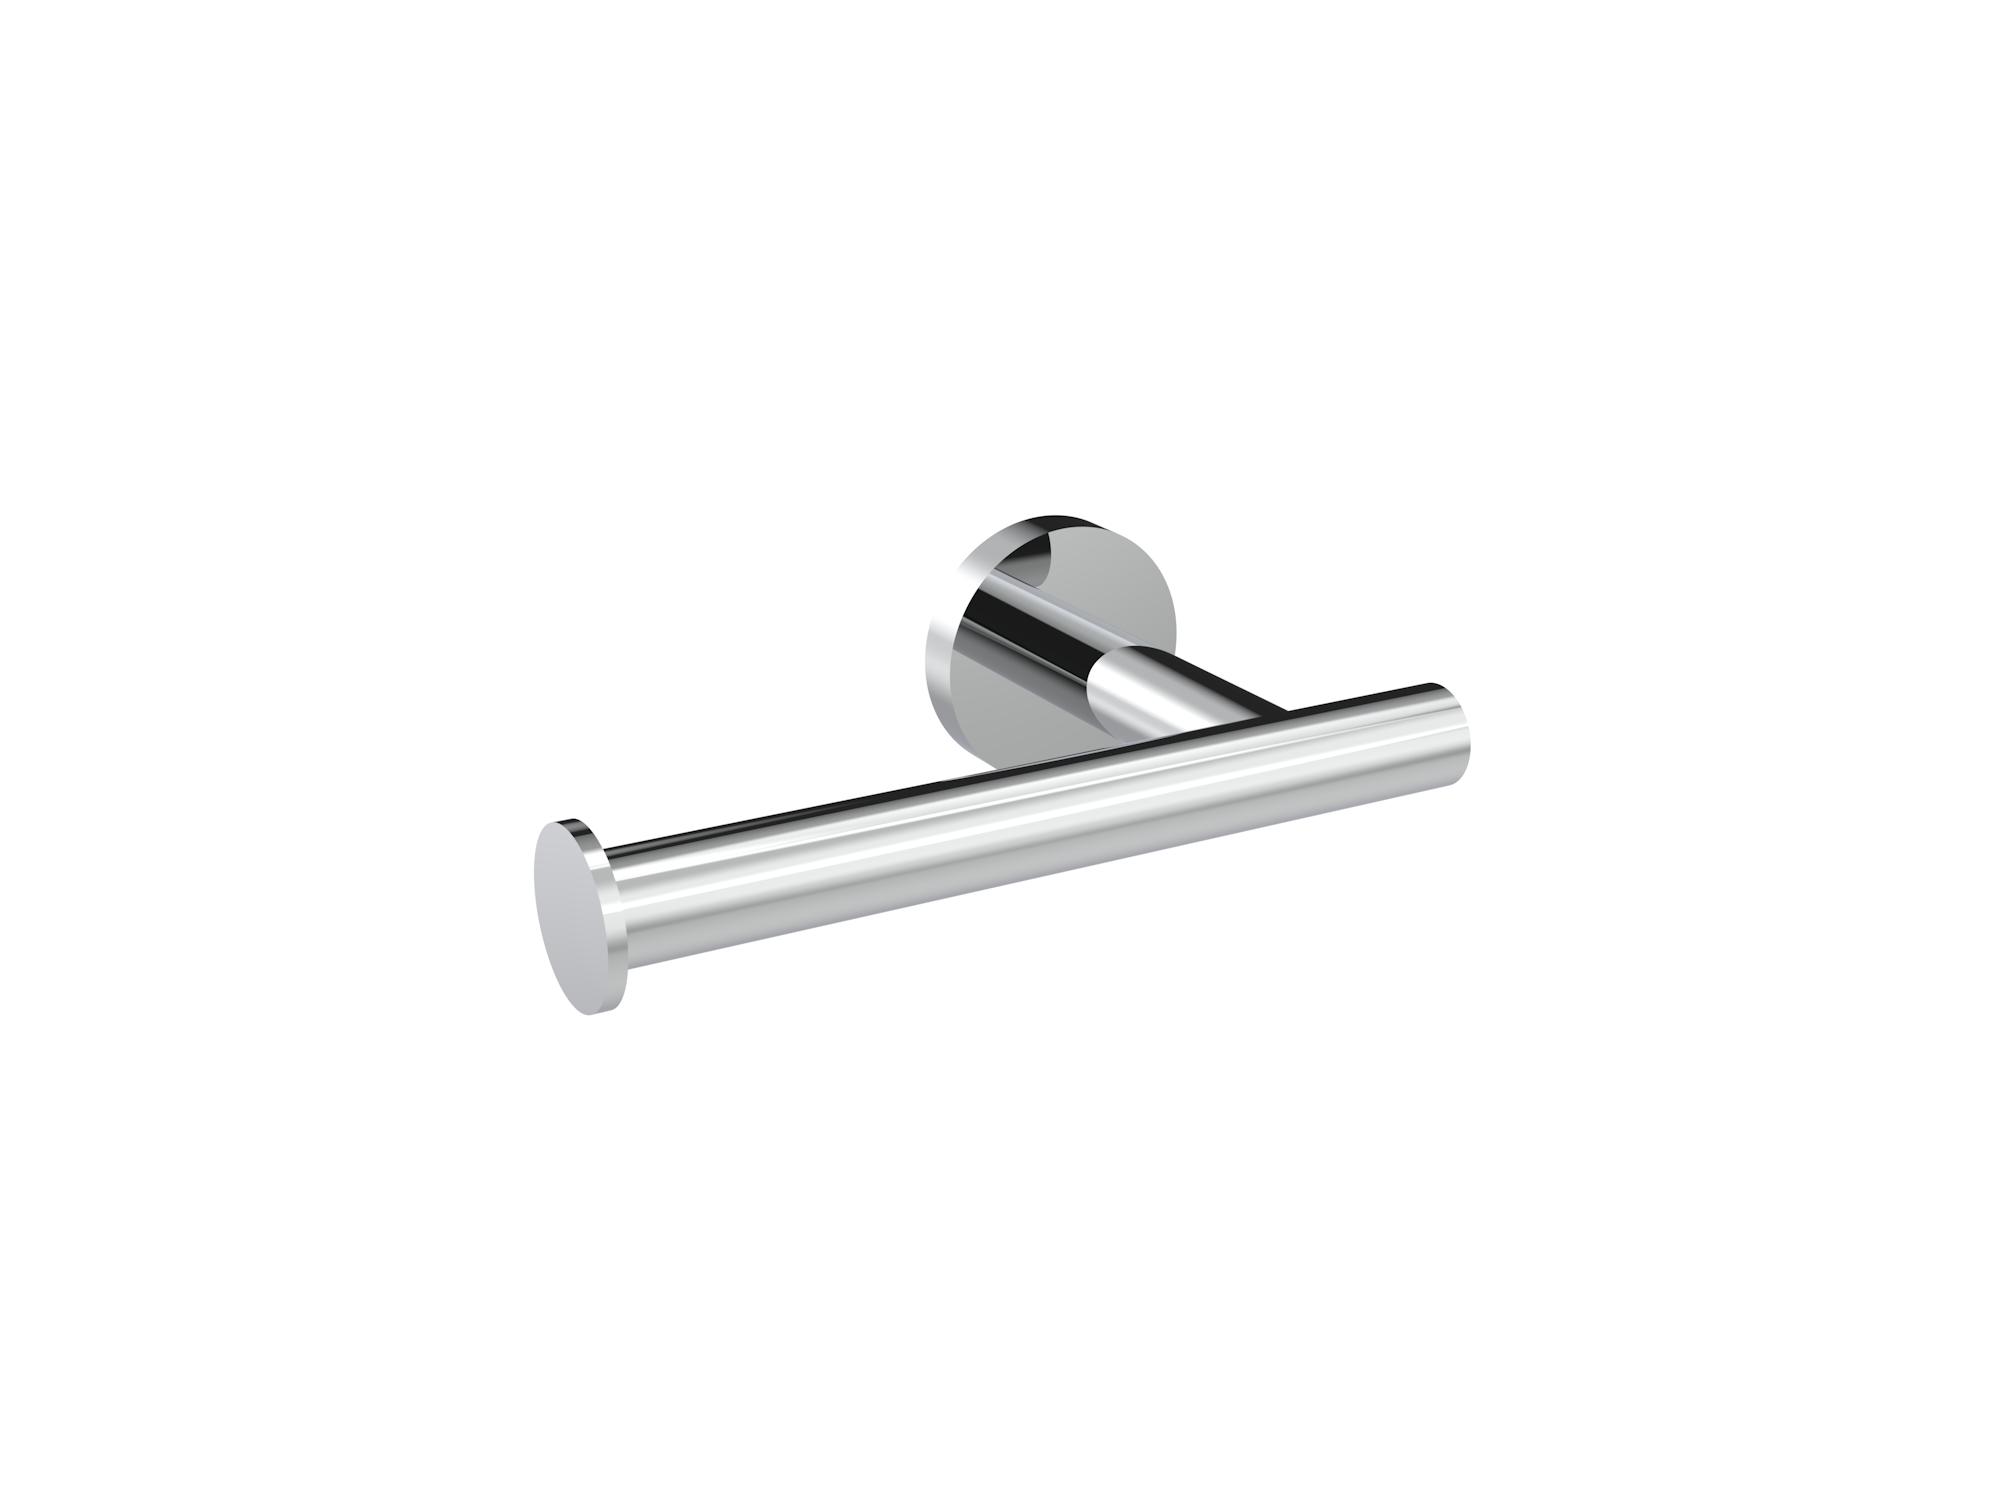 COS toilet roll holder - Chrome